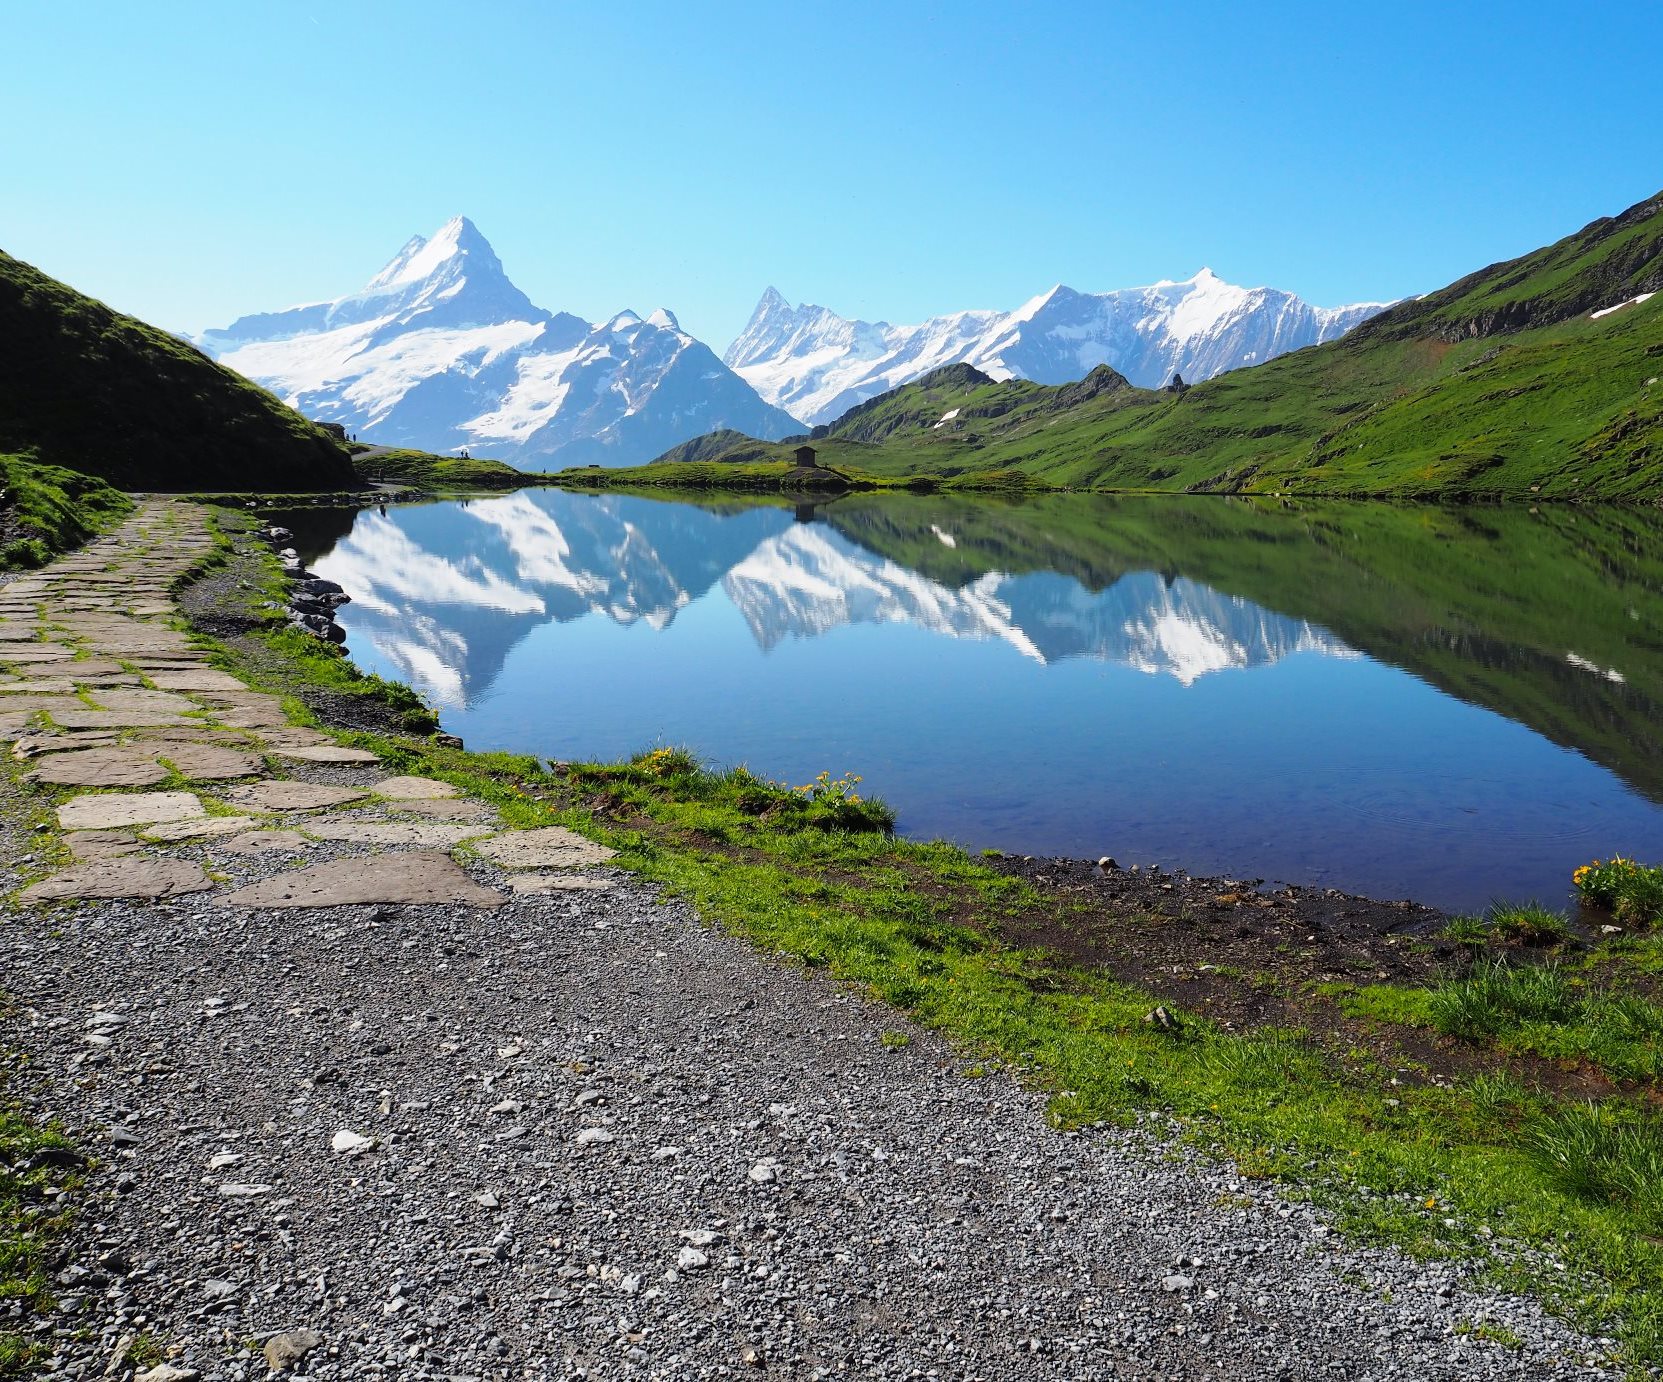 7月16日出発「スイス・アルプス・パノラマ・ハイキングと憧れのヘルンリ小屋訪問と3,400m峰登頂 9日間」